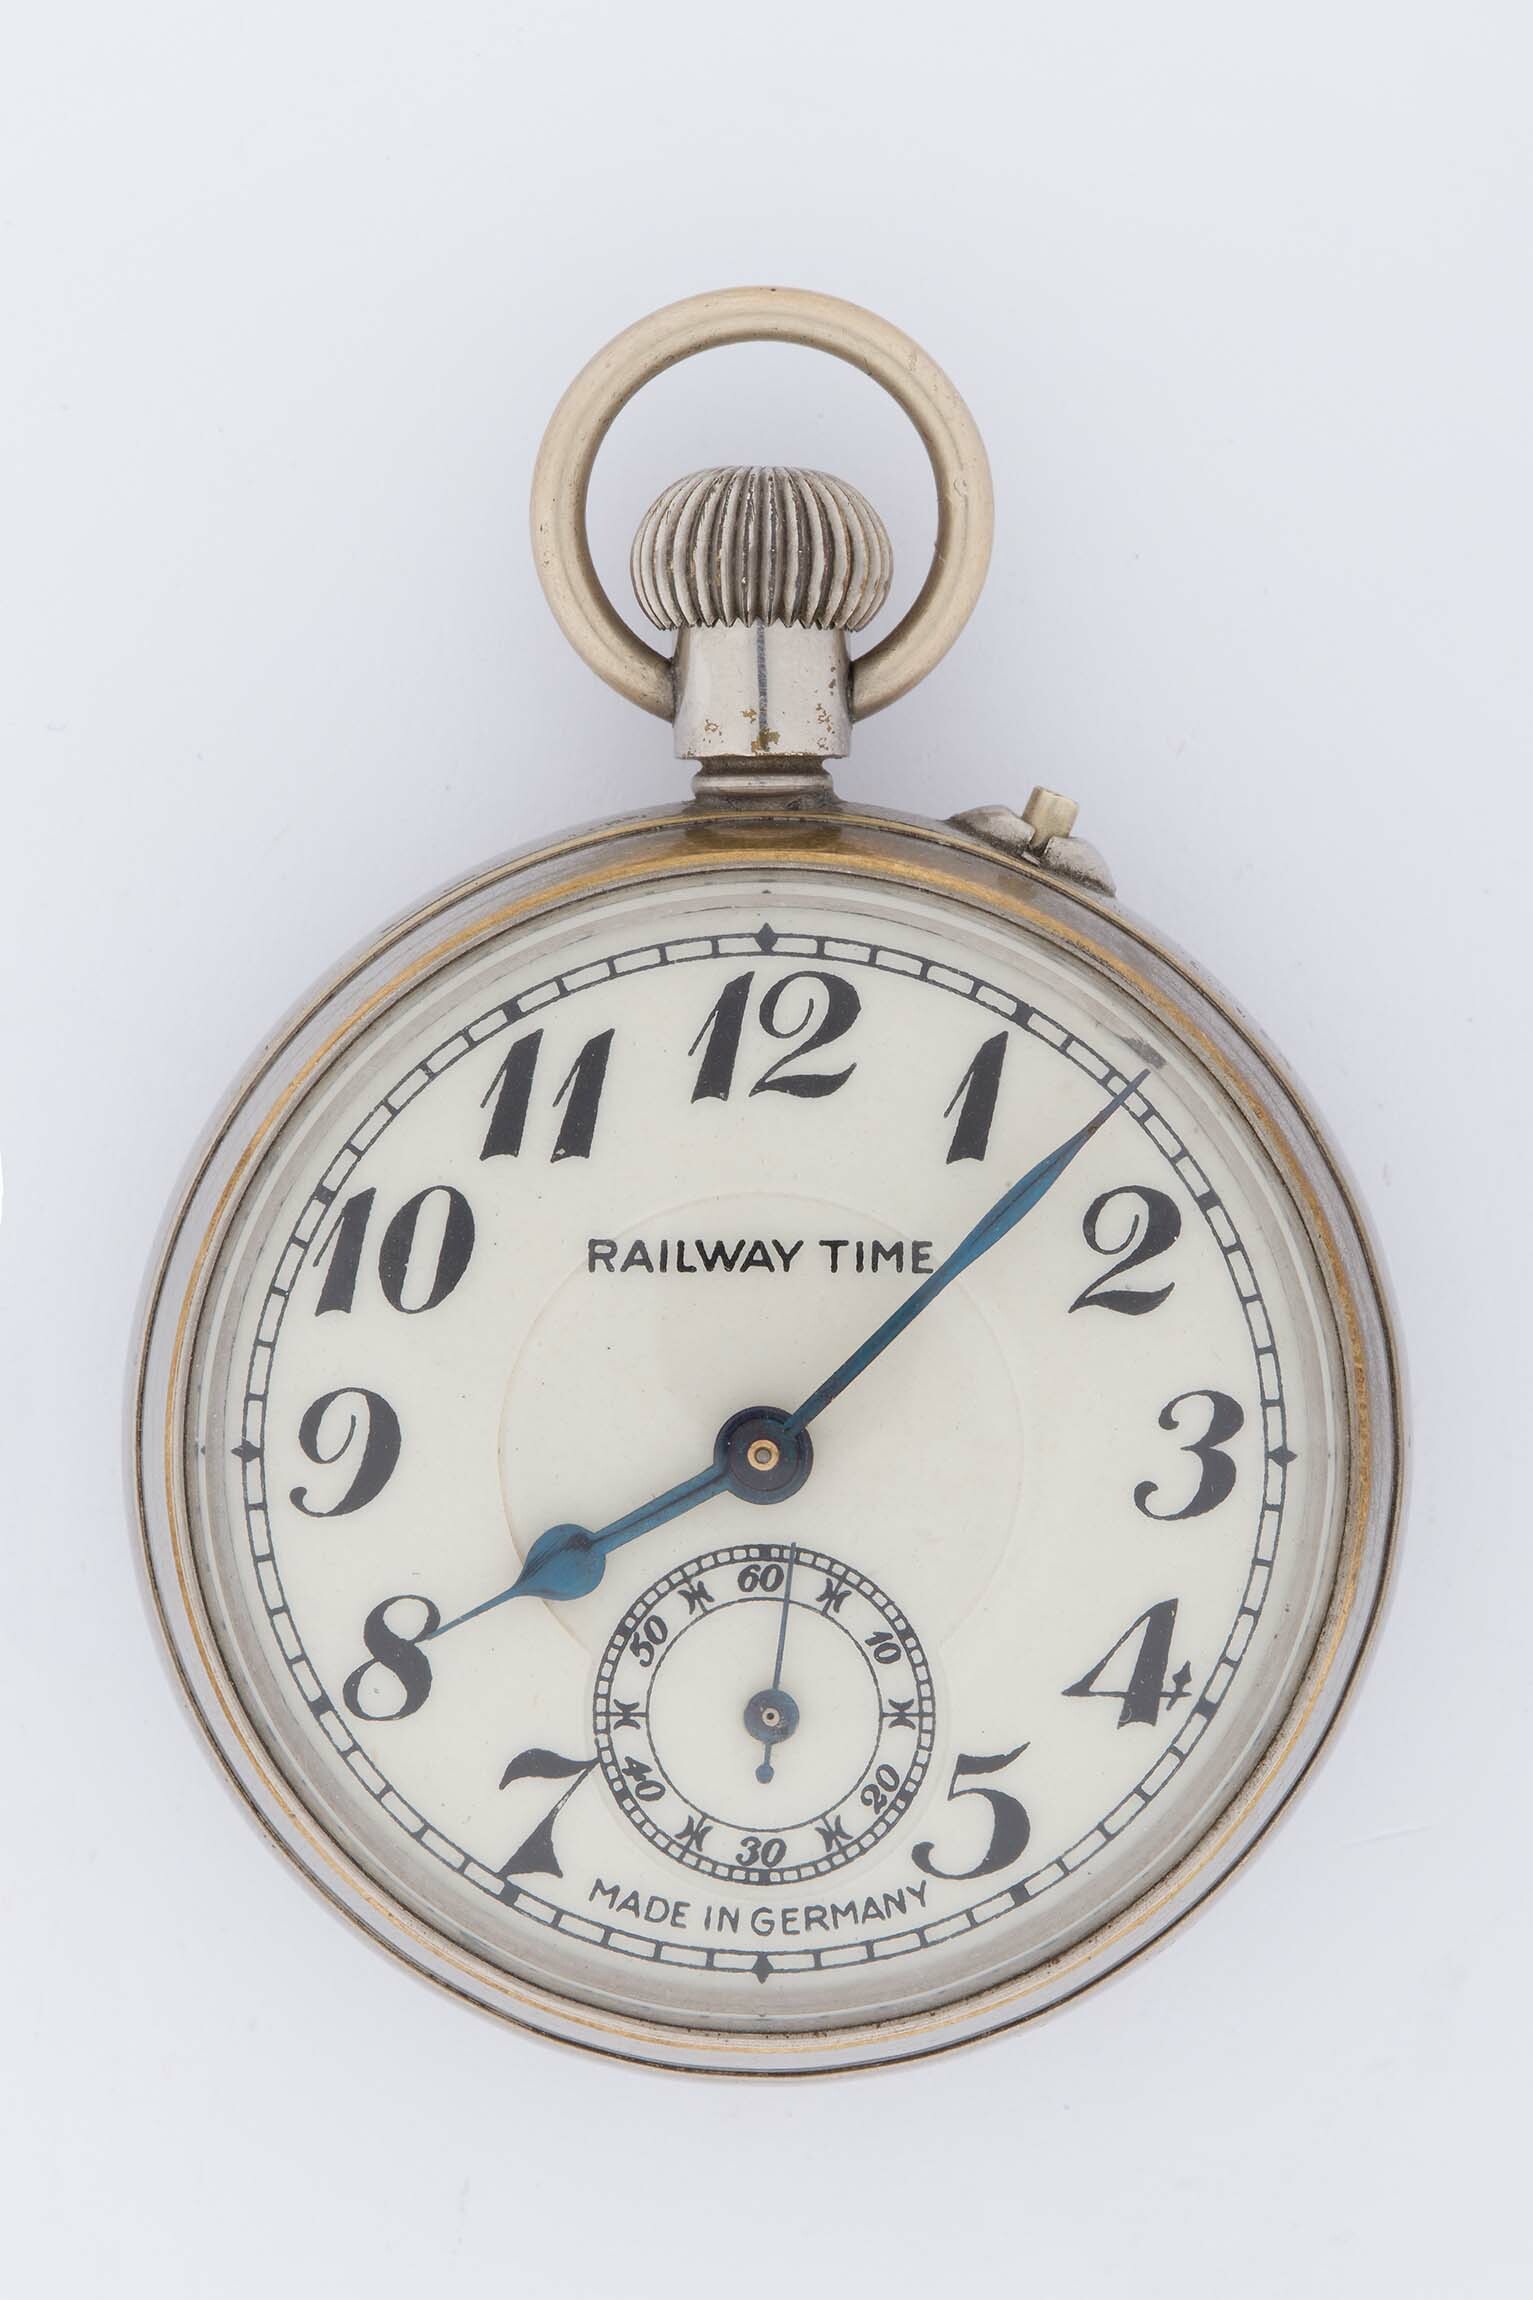 Taschenuhr, Gebrüder Thiel, Ruhla, um 1910 (Deutsches Uhrenmuseum CC BY-SA)